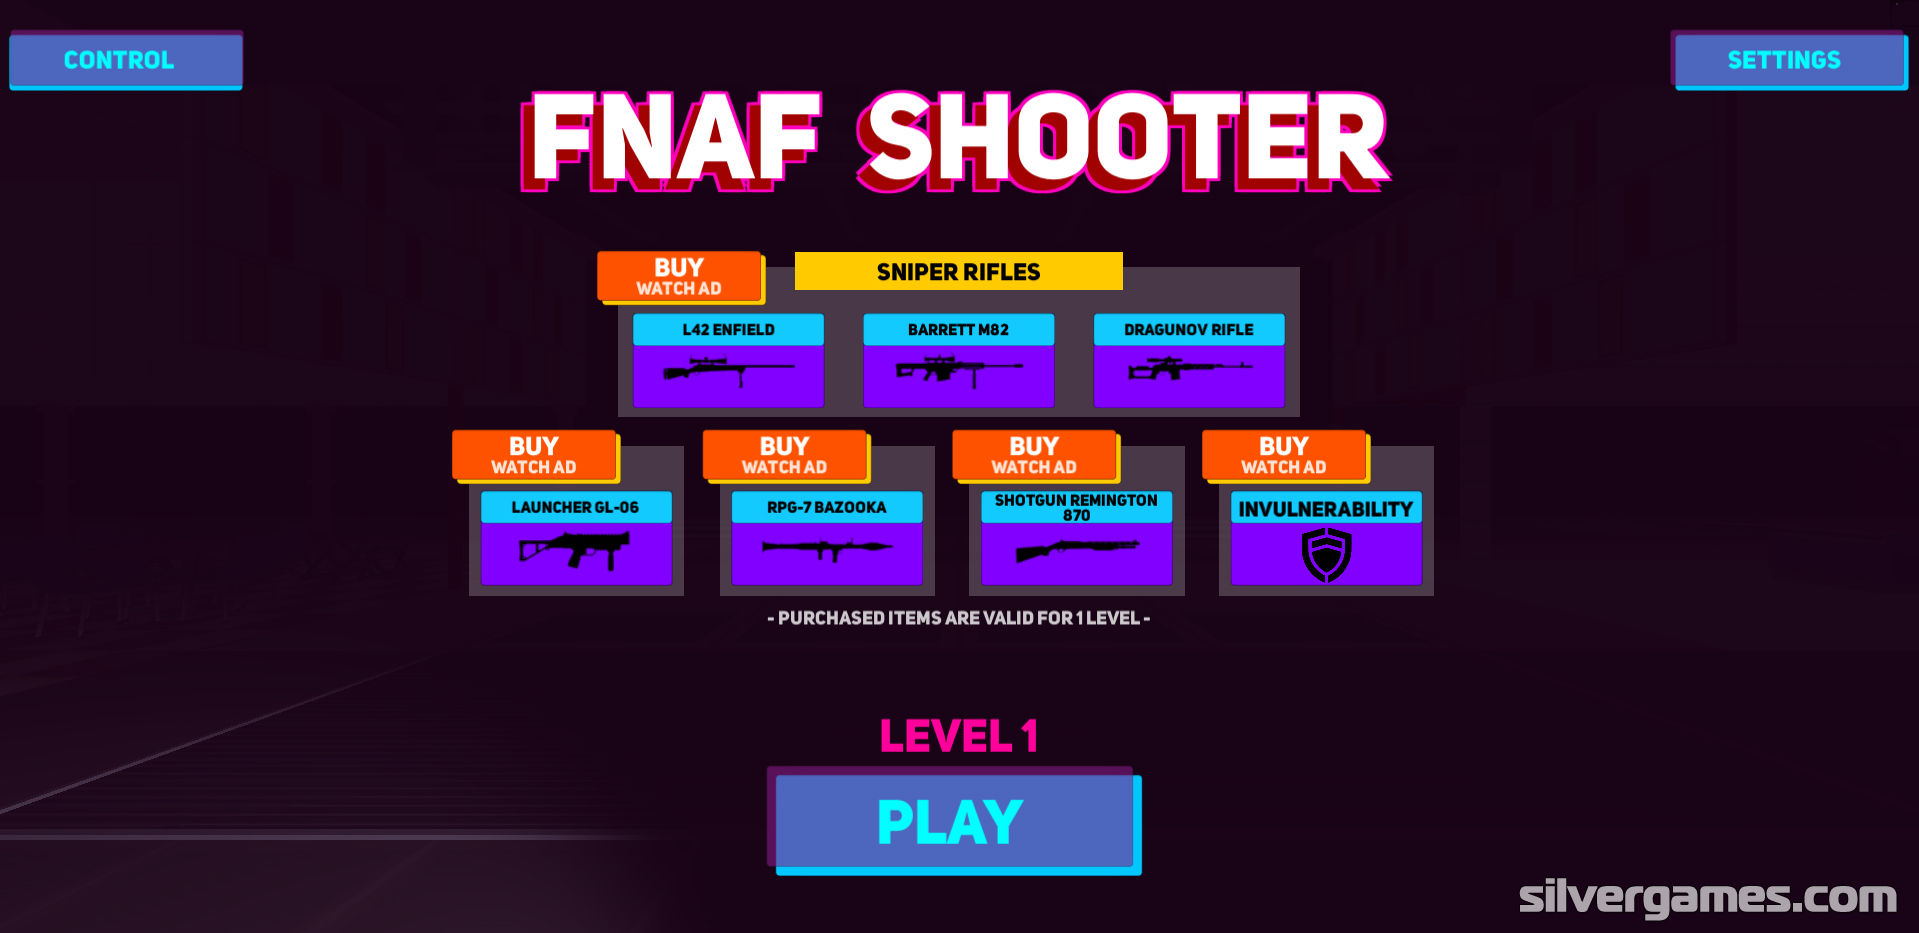 FNAF SHOOTER free online game on